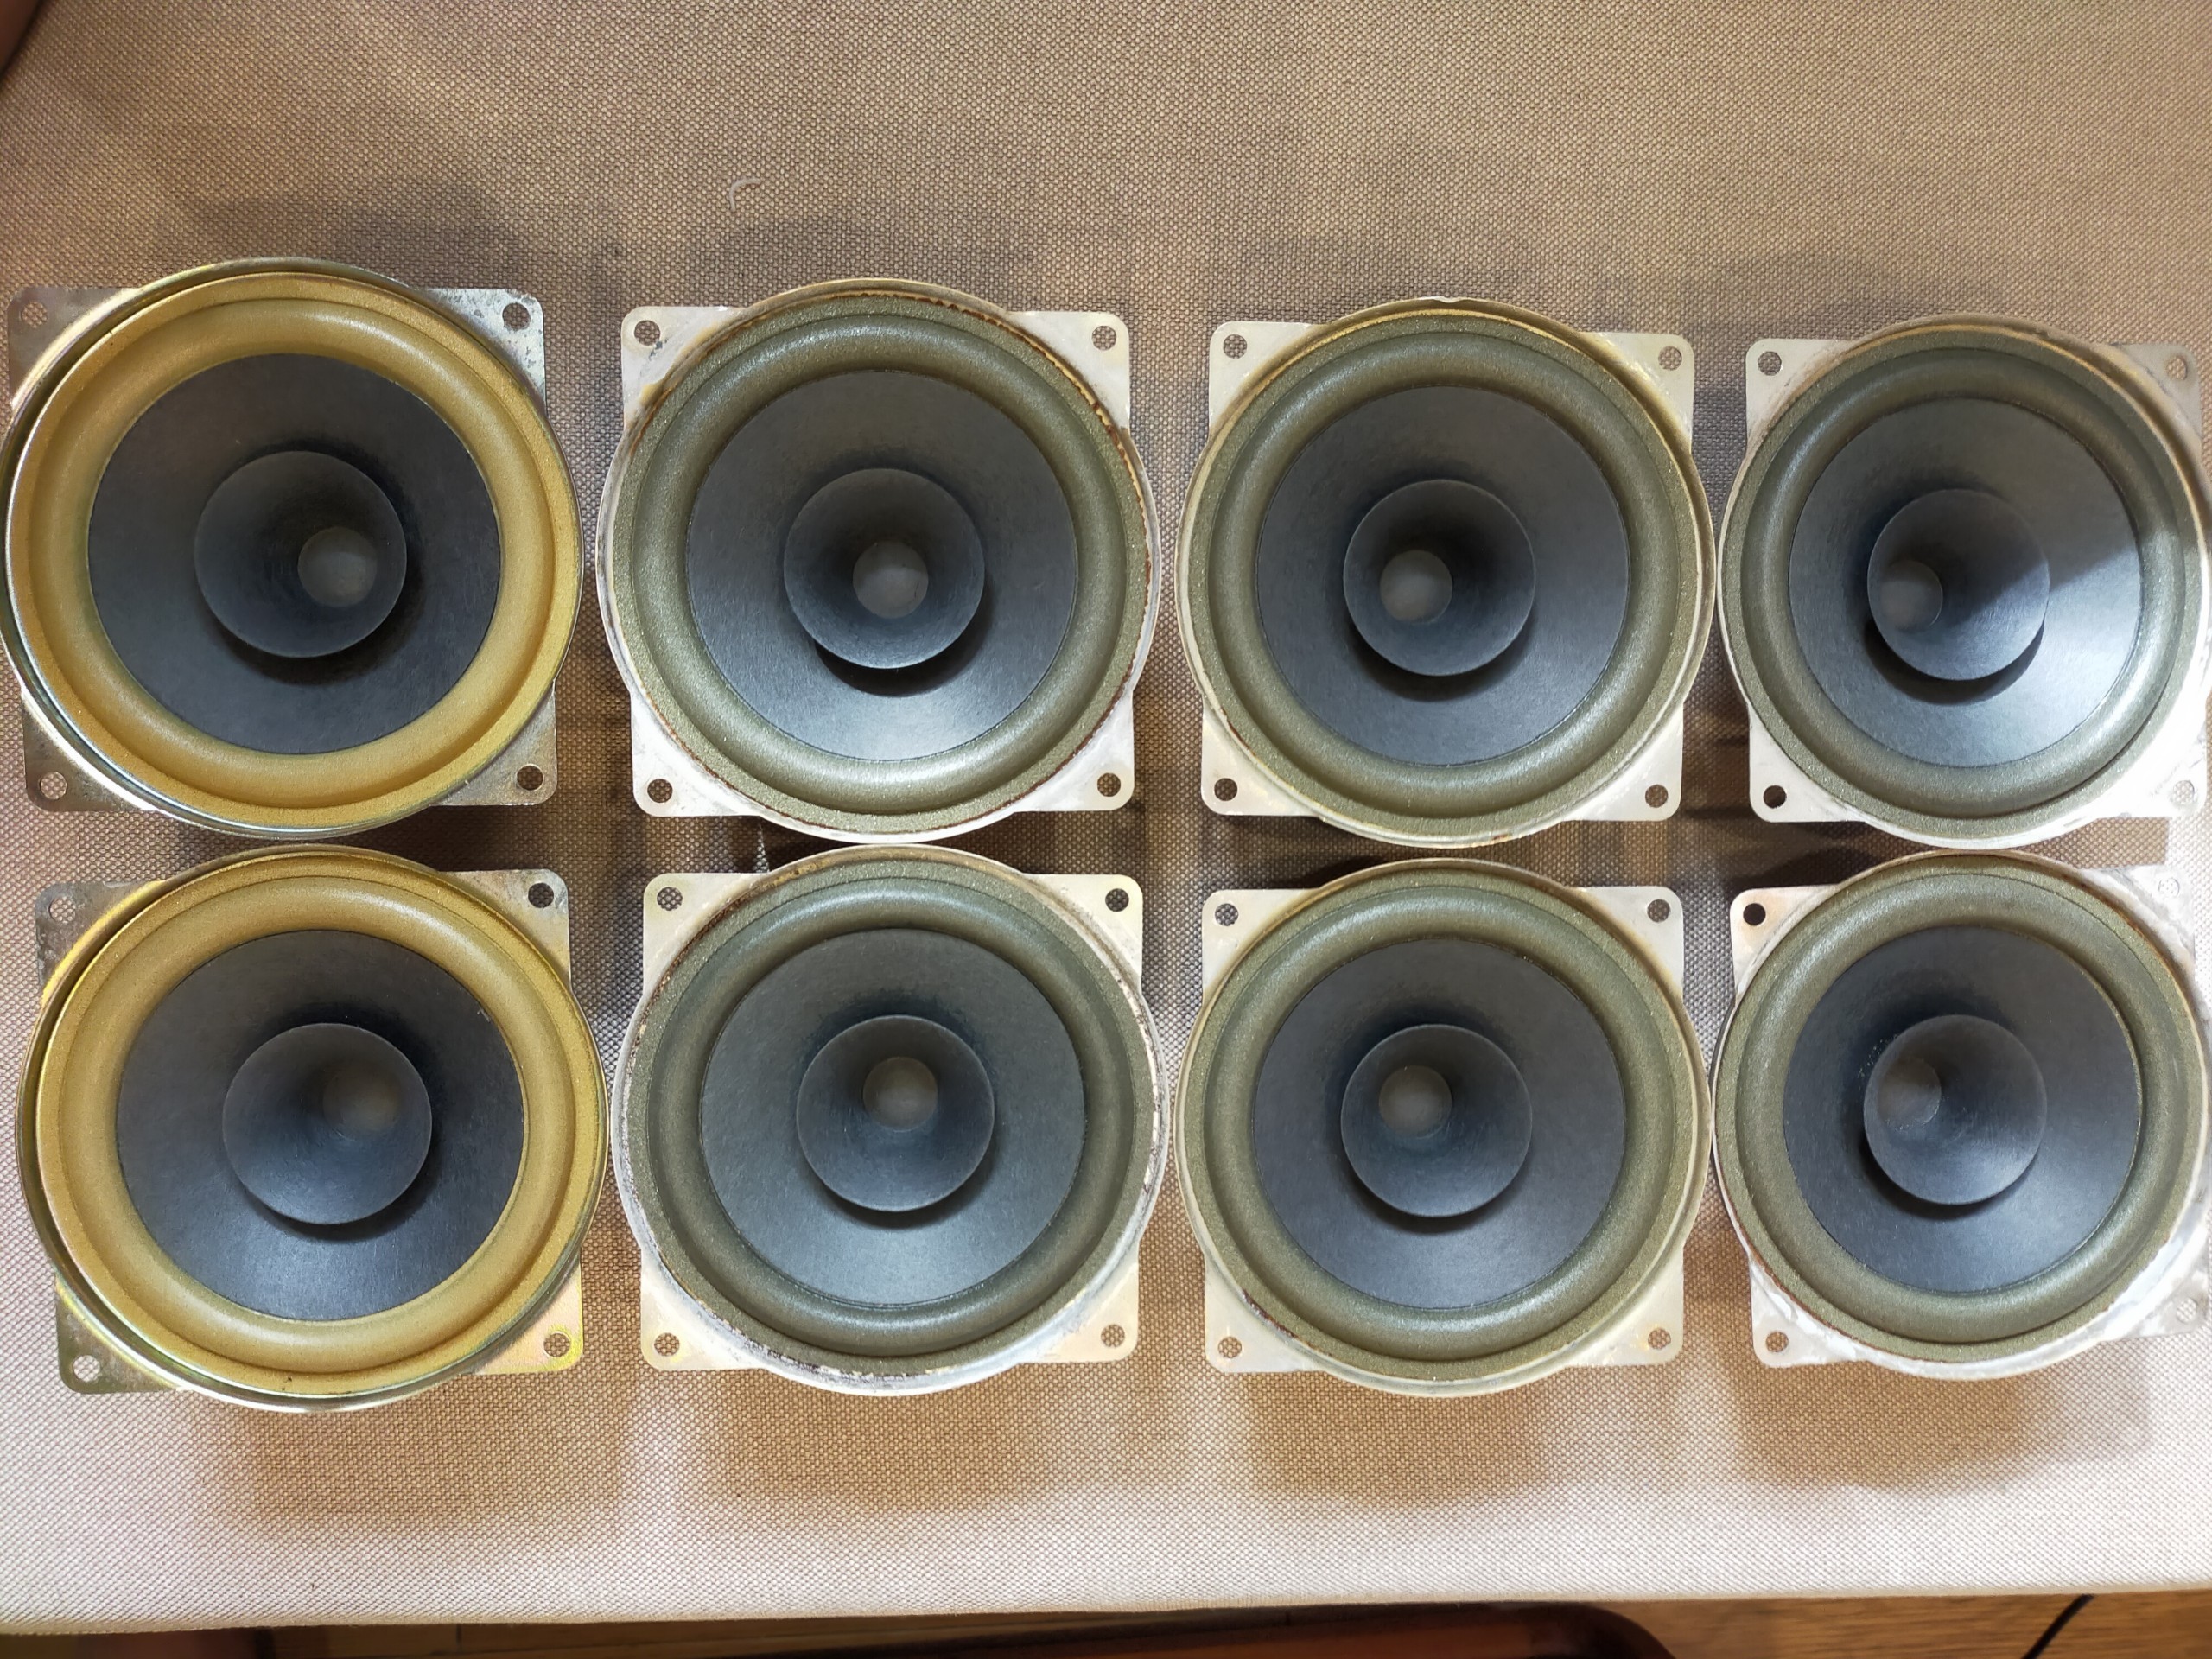 Original container (speaker box) for RFT L2462 8 ohm